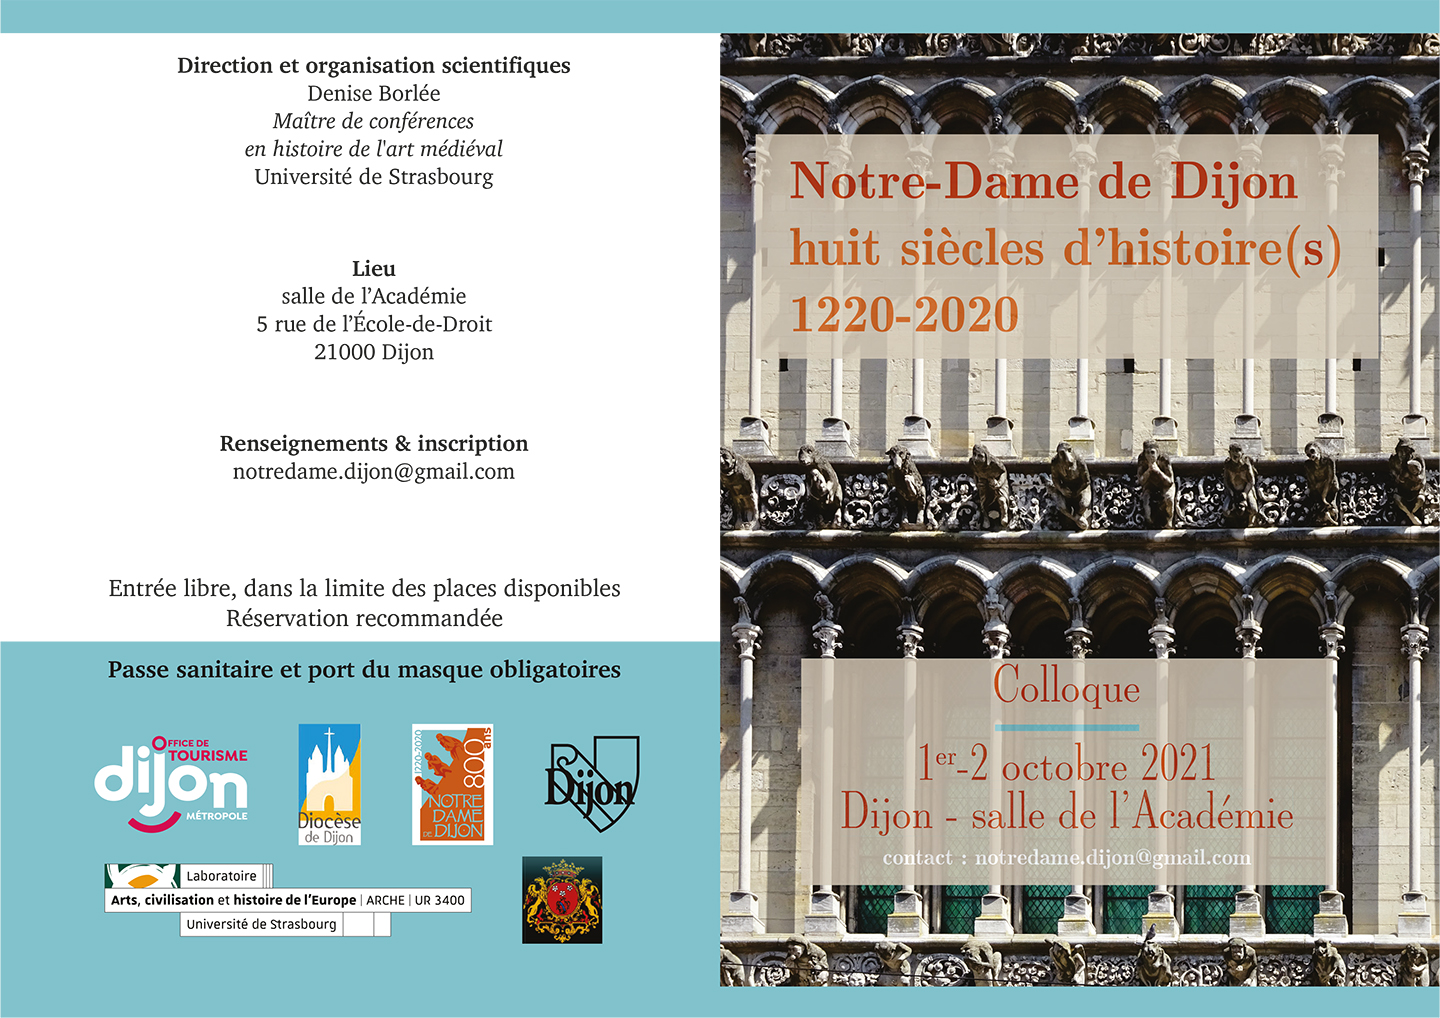 Colloque « Notre-Dame de Dijon. Huit siècles d’histoire(s). 1220-2020 ».